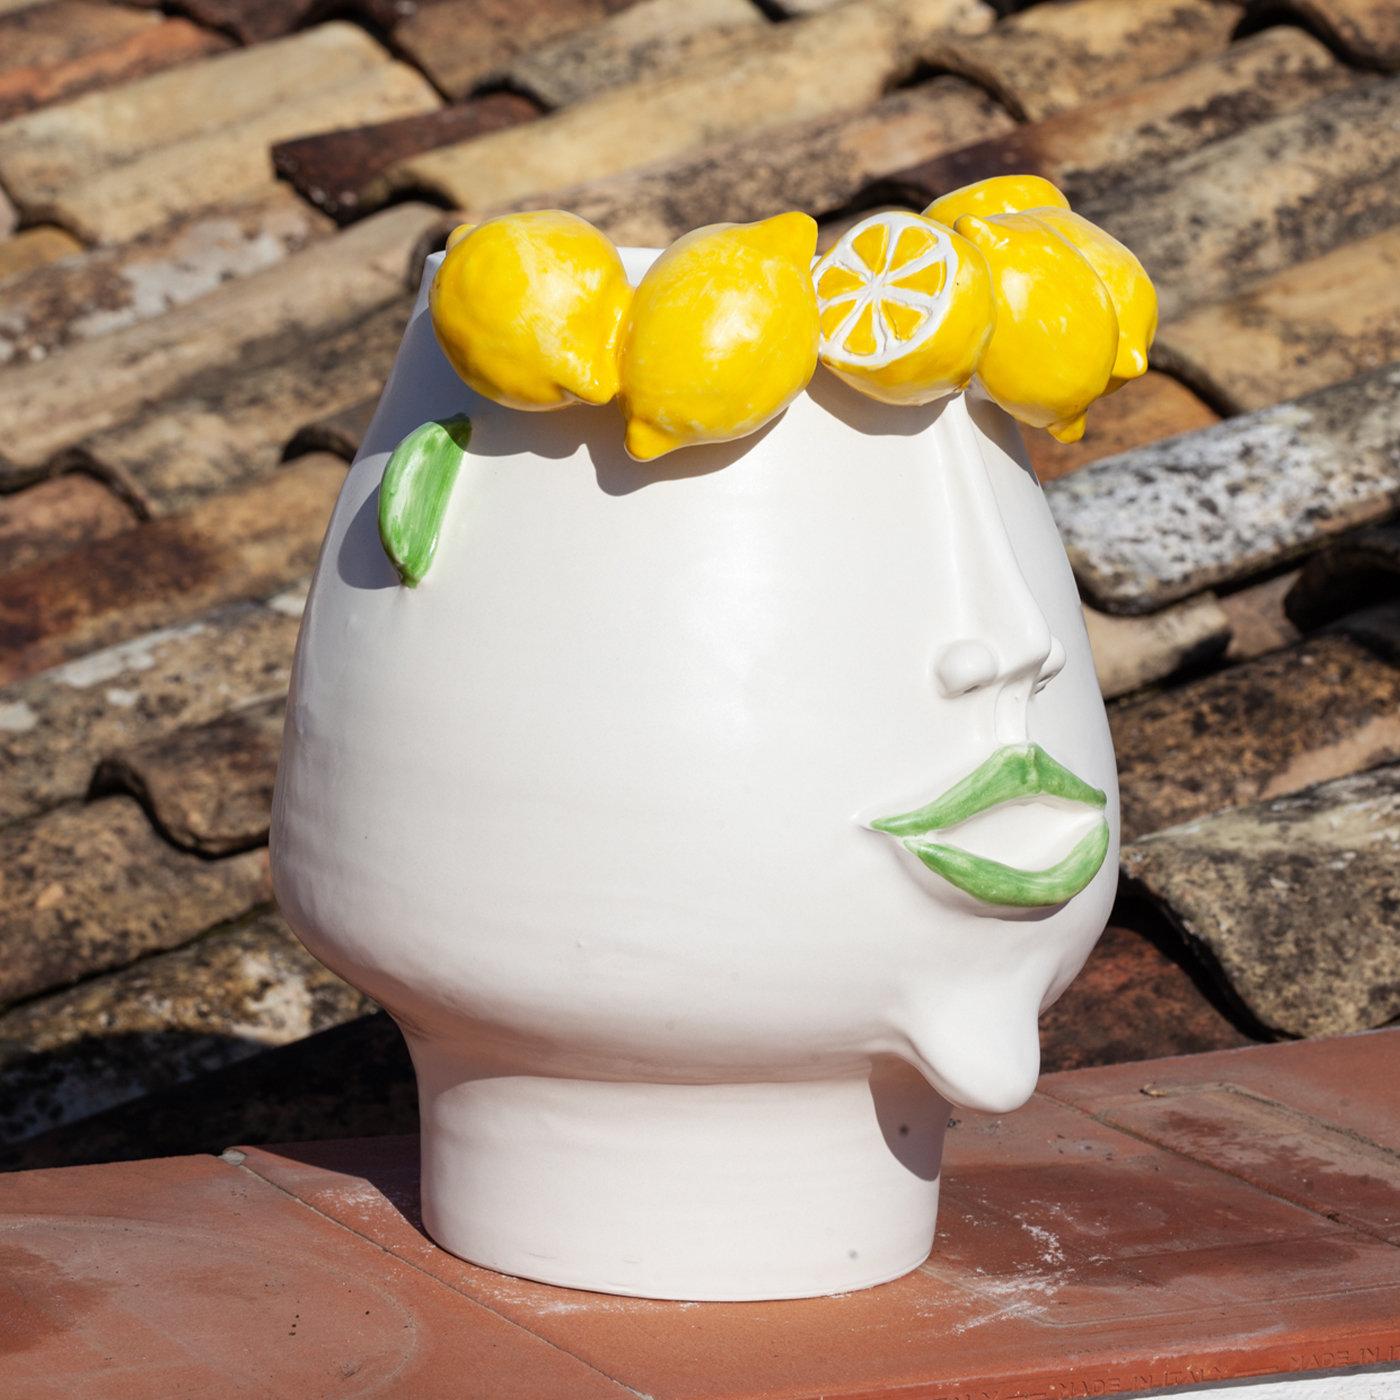 Ce vase exclusif en forme de tête en céramique fine blanche célèbre la beauté authentique d'un métier difficile mais fascinant, celui de cueilleur de citrons. Idéale comme récipient pour l'intérieur ou l'extérieur, elle représente Domitilla, une